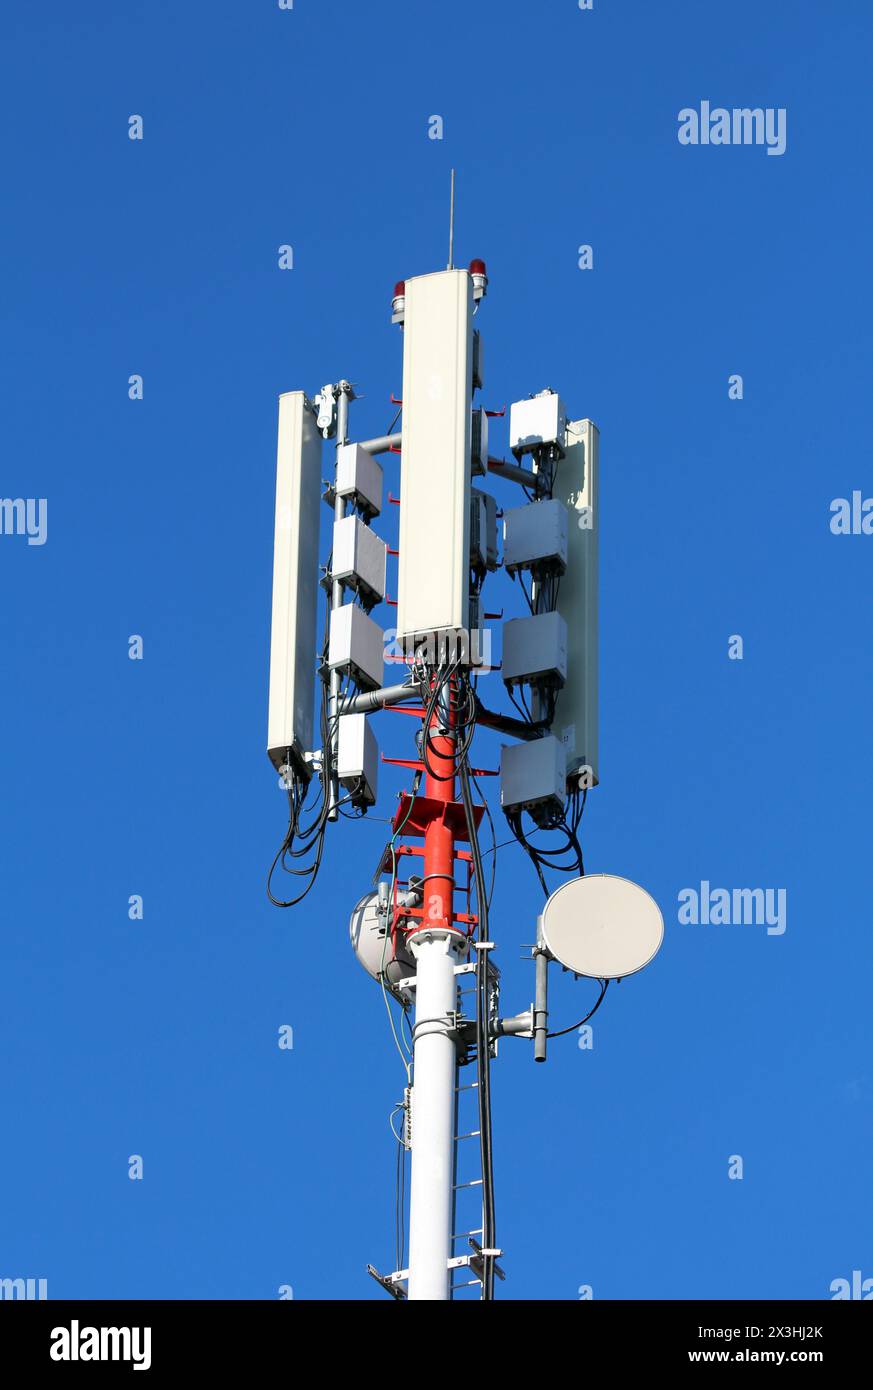 Mobiltelefonsender und -Antennen in verschiedenen Formen und Größen, die auf einem hohen starken roten und weißen Metallmast auf klarem blauem Hintergrund montiert sind Stockfoto